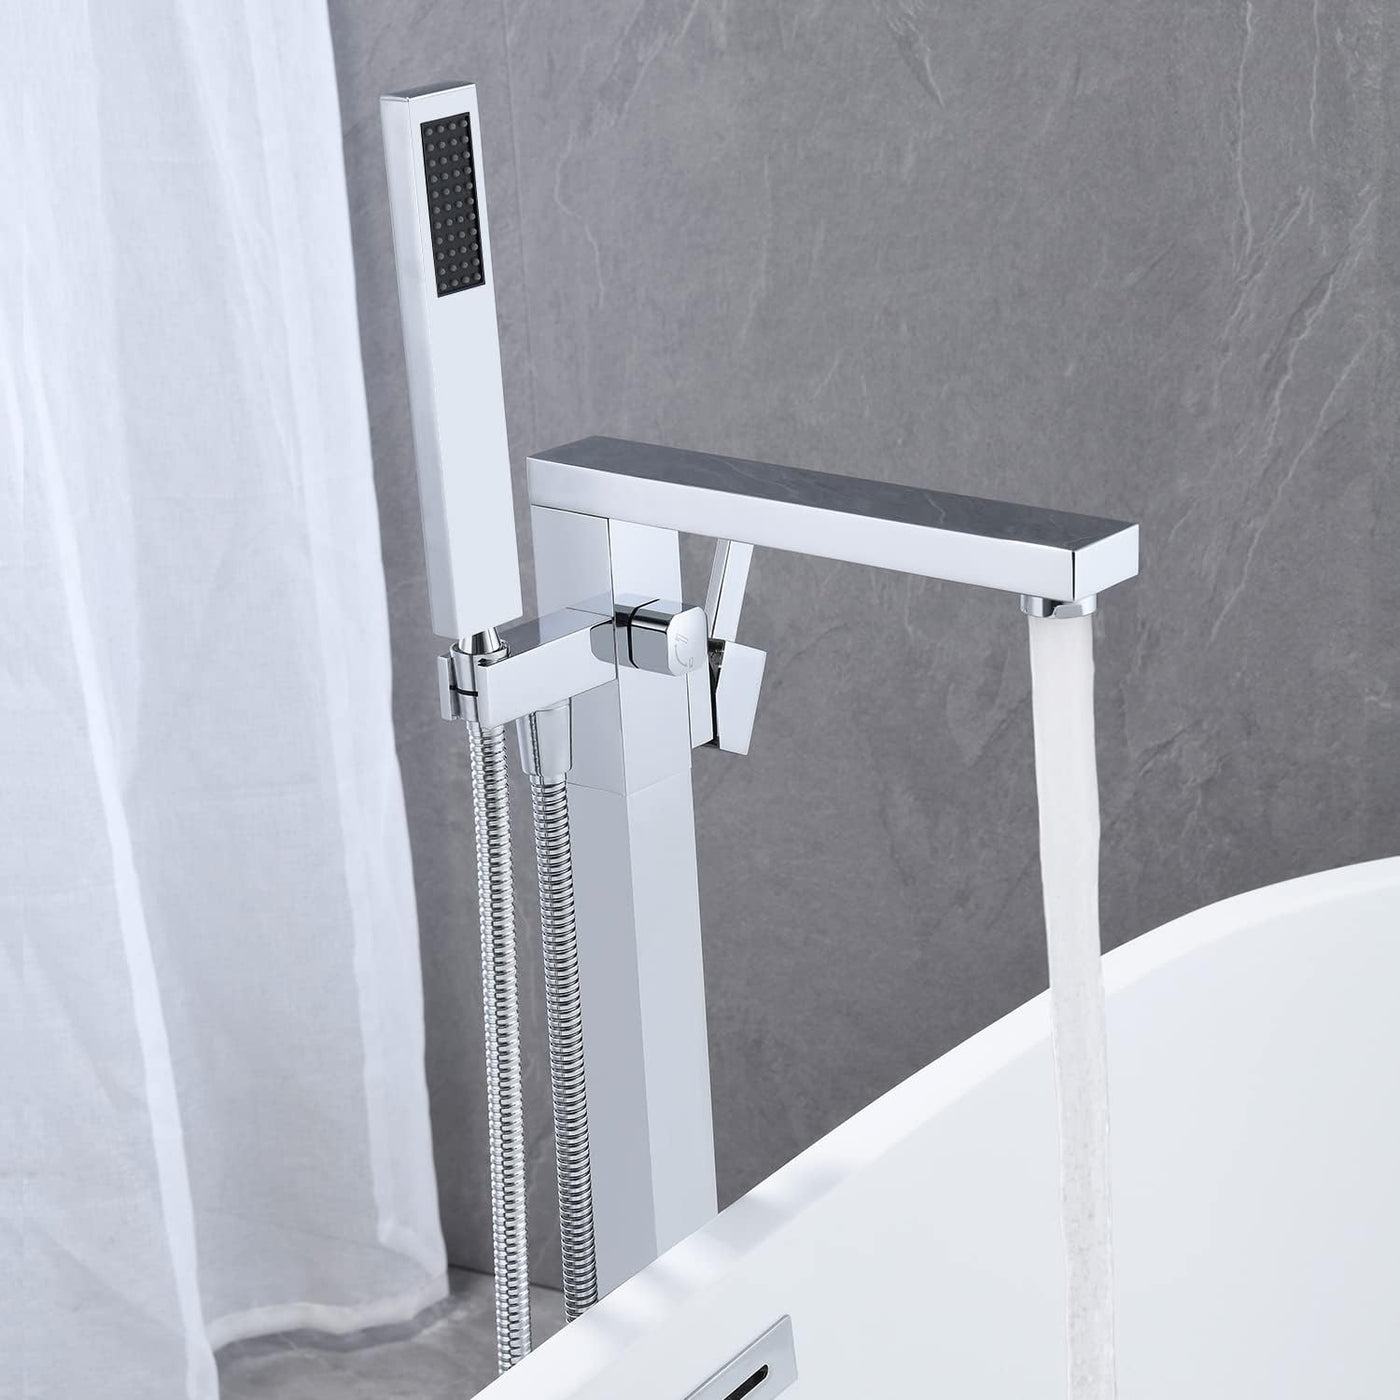 Wowkk Freestanding Bathtub Faucet Tub Filler Chrome Floor Mount - $160